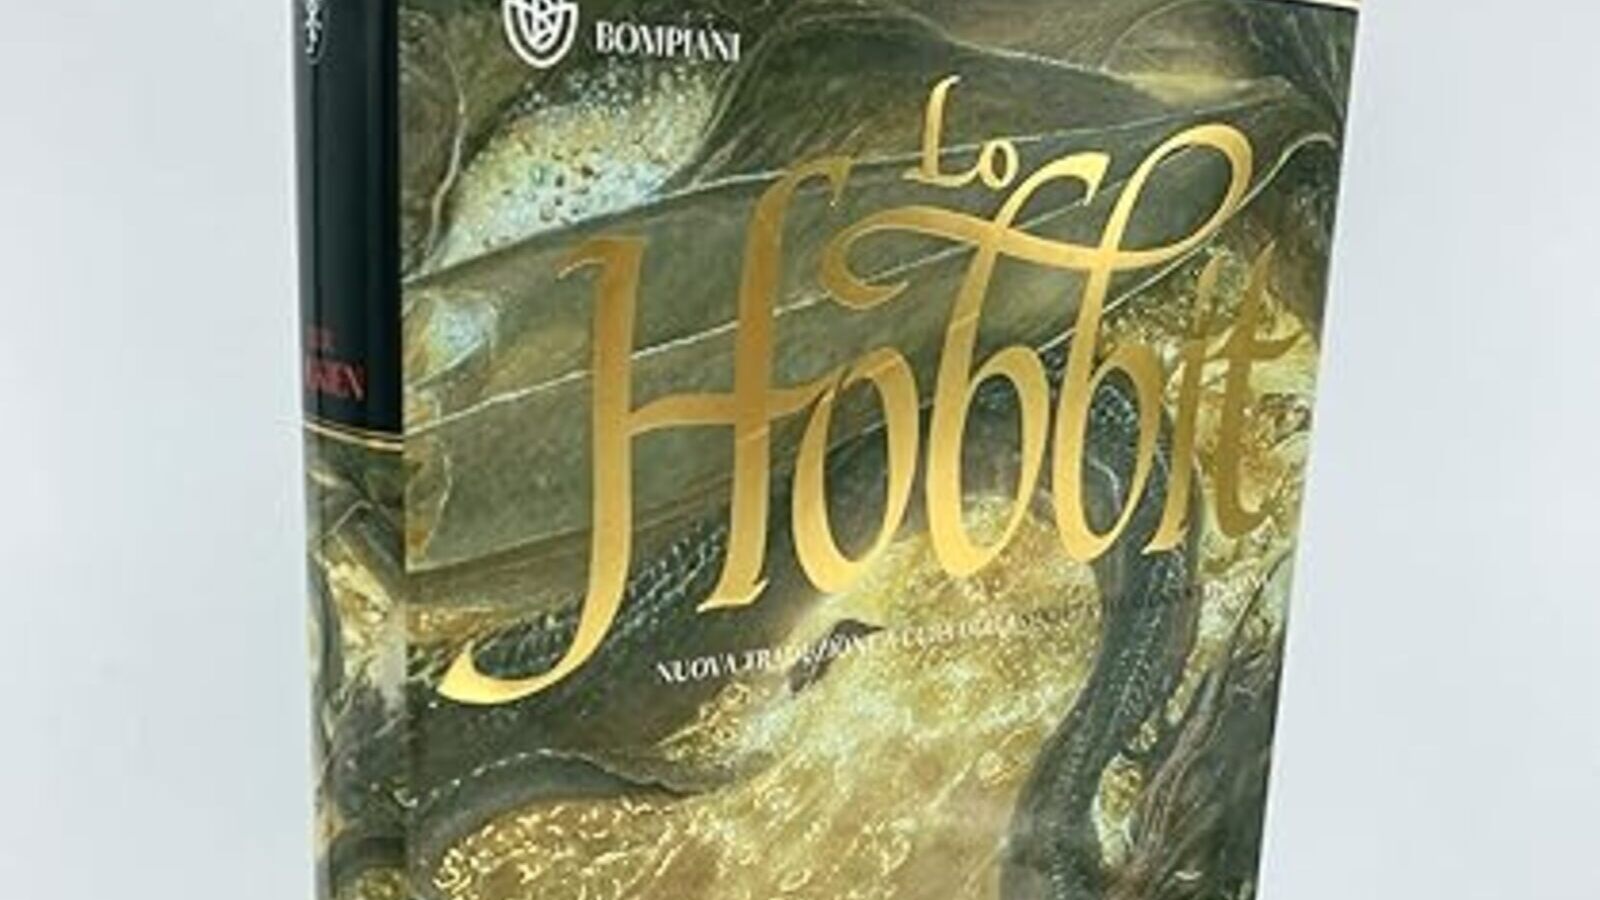 Lo Hobbit: la versione illustrata da Alan Lee del libro di J.R.R. Tolkien è in offerta su Amazon